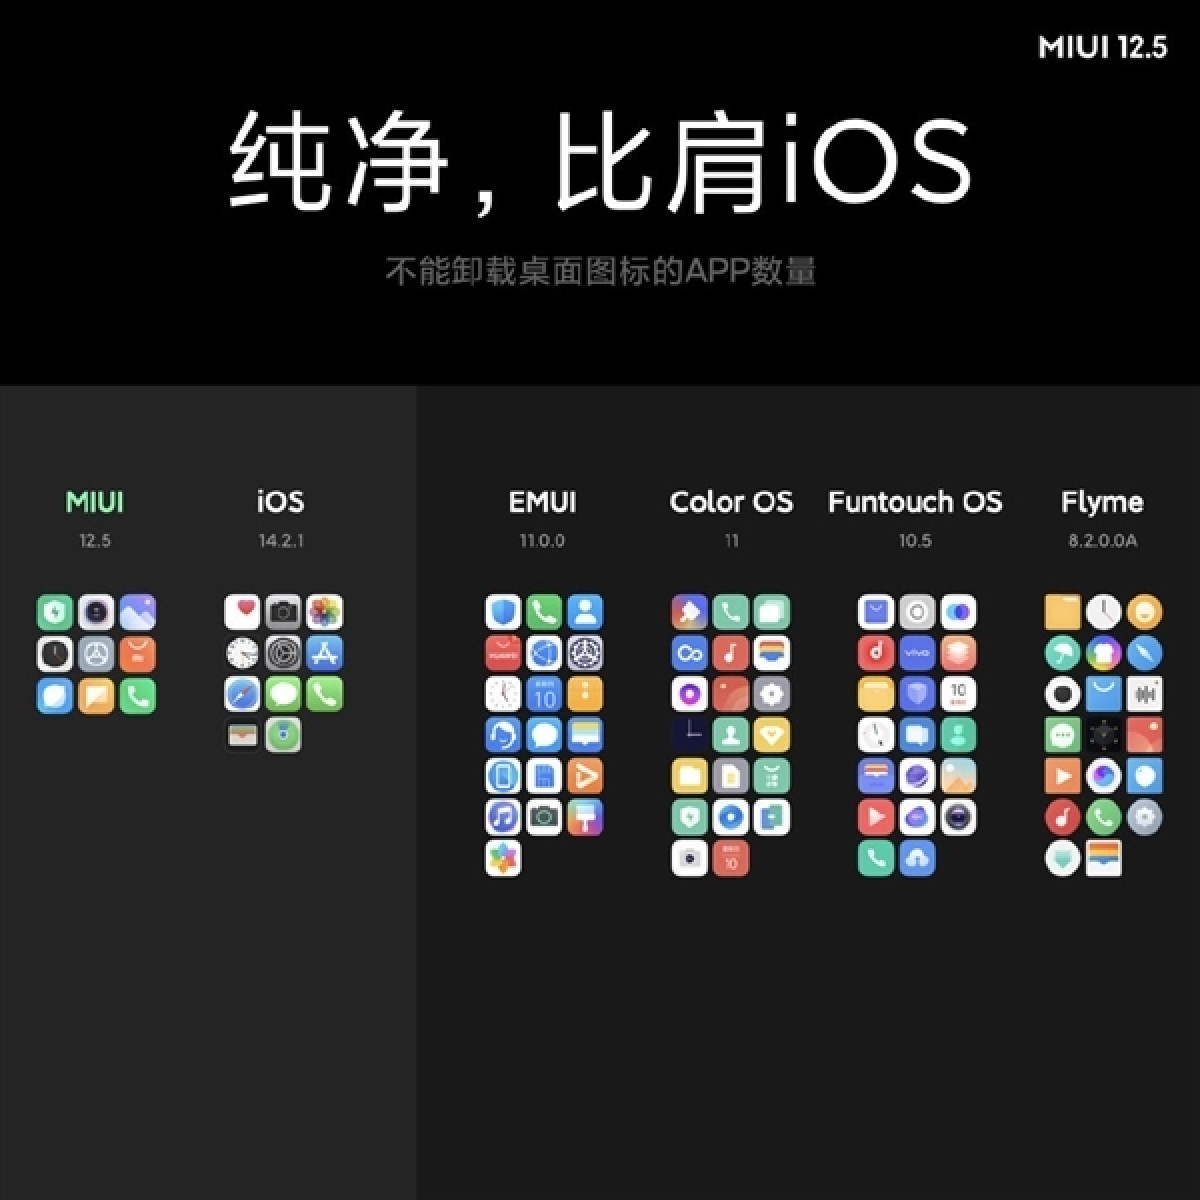 Xiaomi ra mắt MIUI
12.5 kèm lời tuyên bố: hiệu năng mượt ngang iOS và còn ít
ứng dụng rác hơn